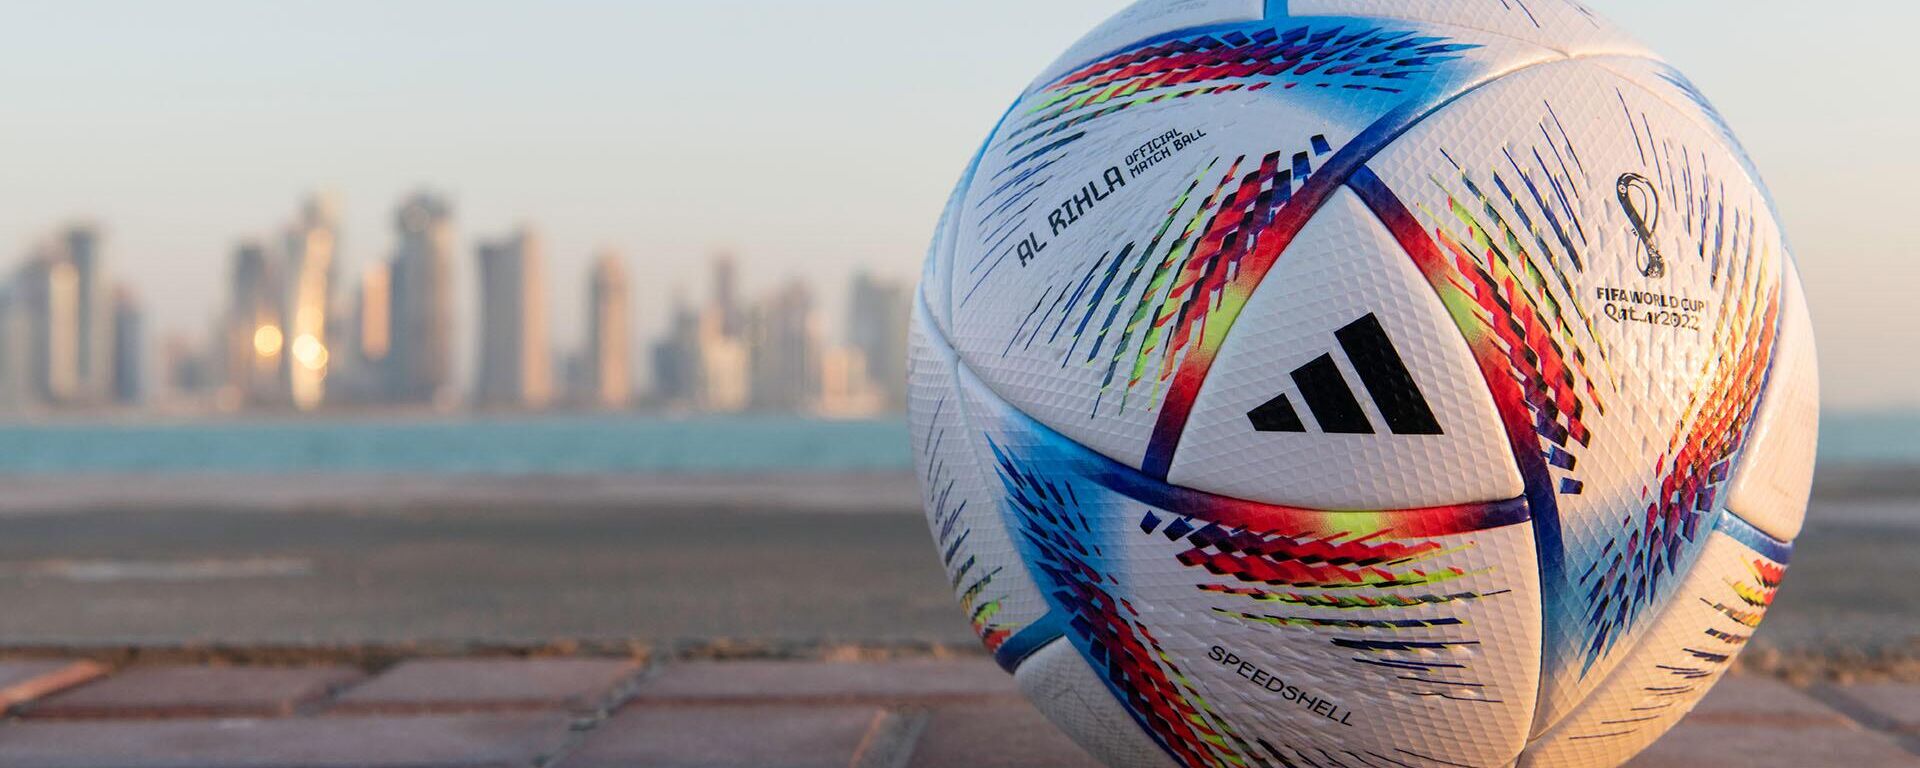  La empresa Adidas presentó a 'Al Rihla' como el balón oficial de la Copa Mundial de la FIFA Catar 2022 - Sputnik Mundo, 1920, 07.11.2022